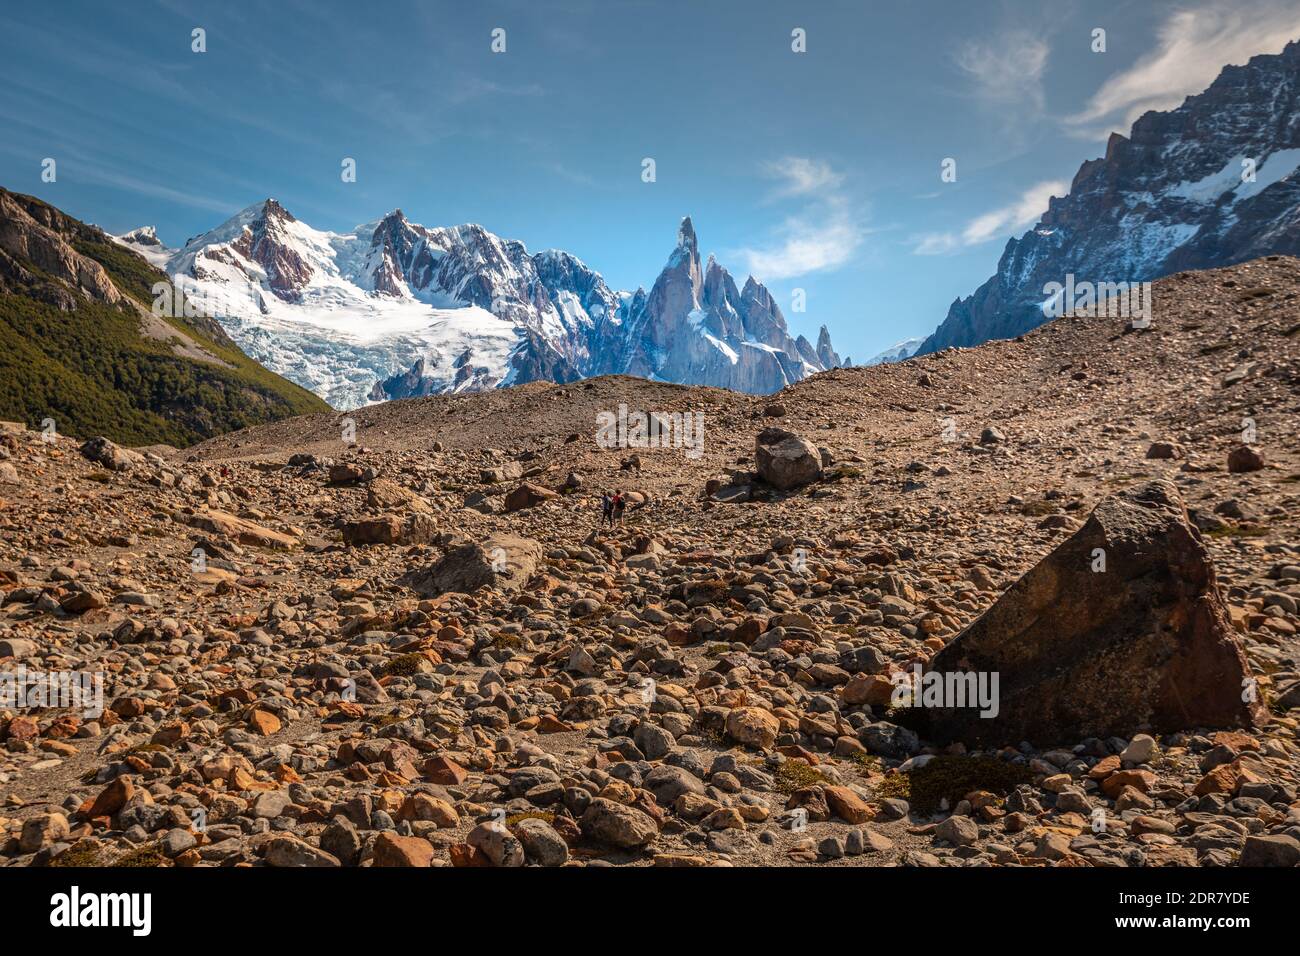 Cerro Torre in Patagonia Argentina Stock Photo